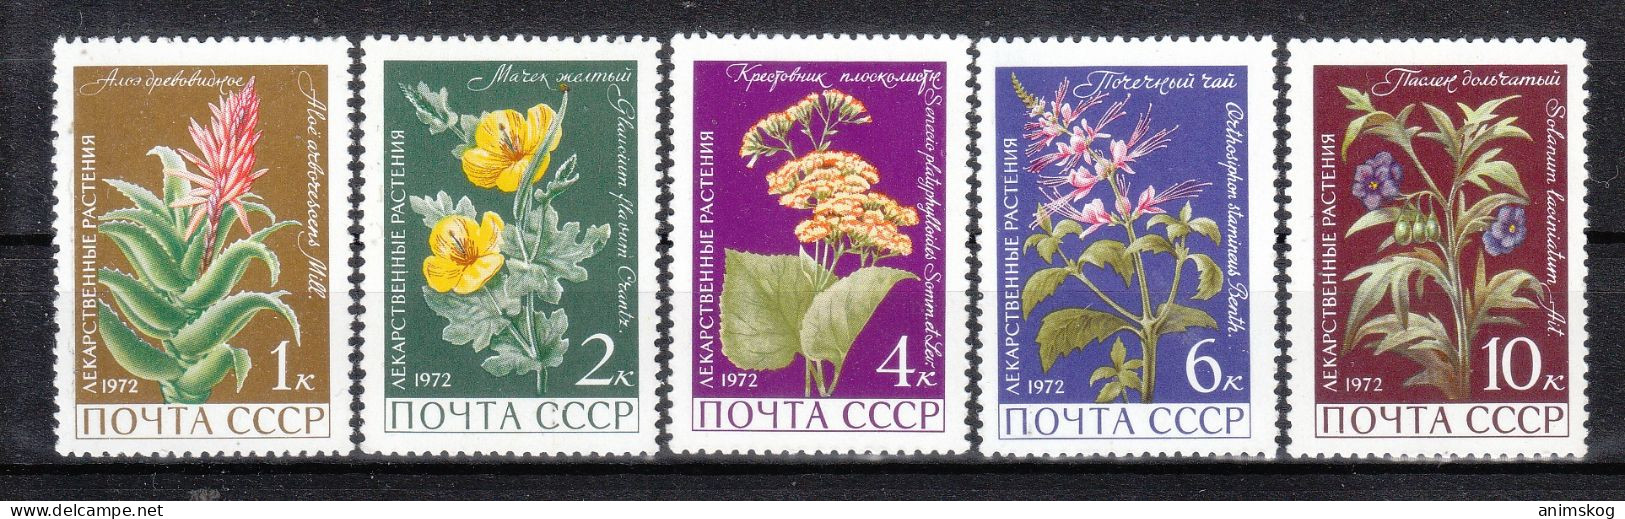 UdSSR 1972**, Arzneipflanzen, Mit Sukkulenten Aloe Und Senecio / USSR 1972, MNH, Medicinal Plants With Aloe And Senecio - Sukkulenten